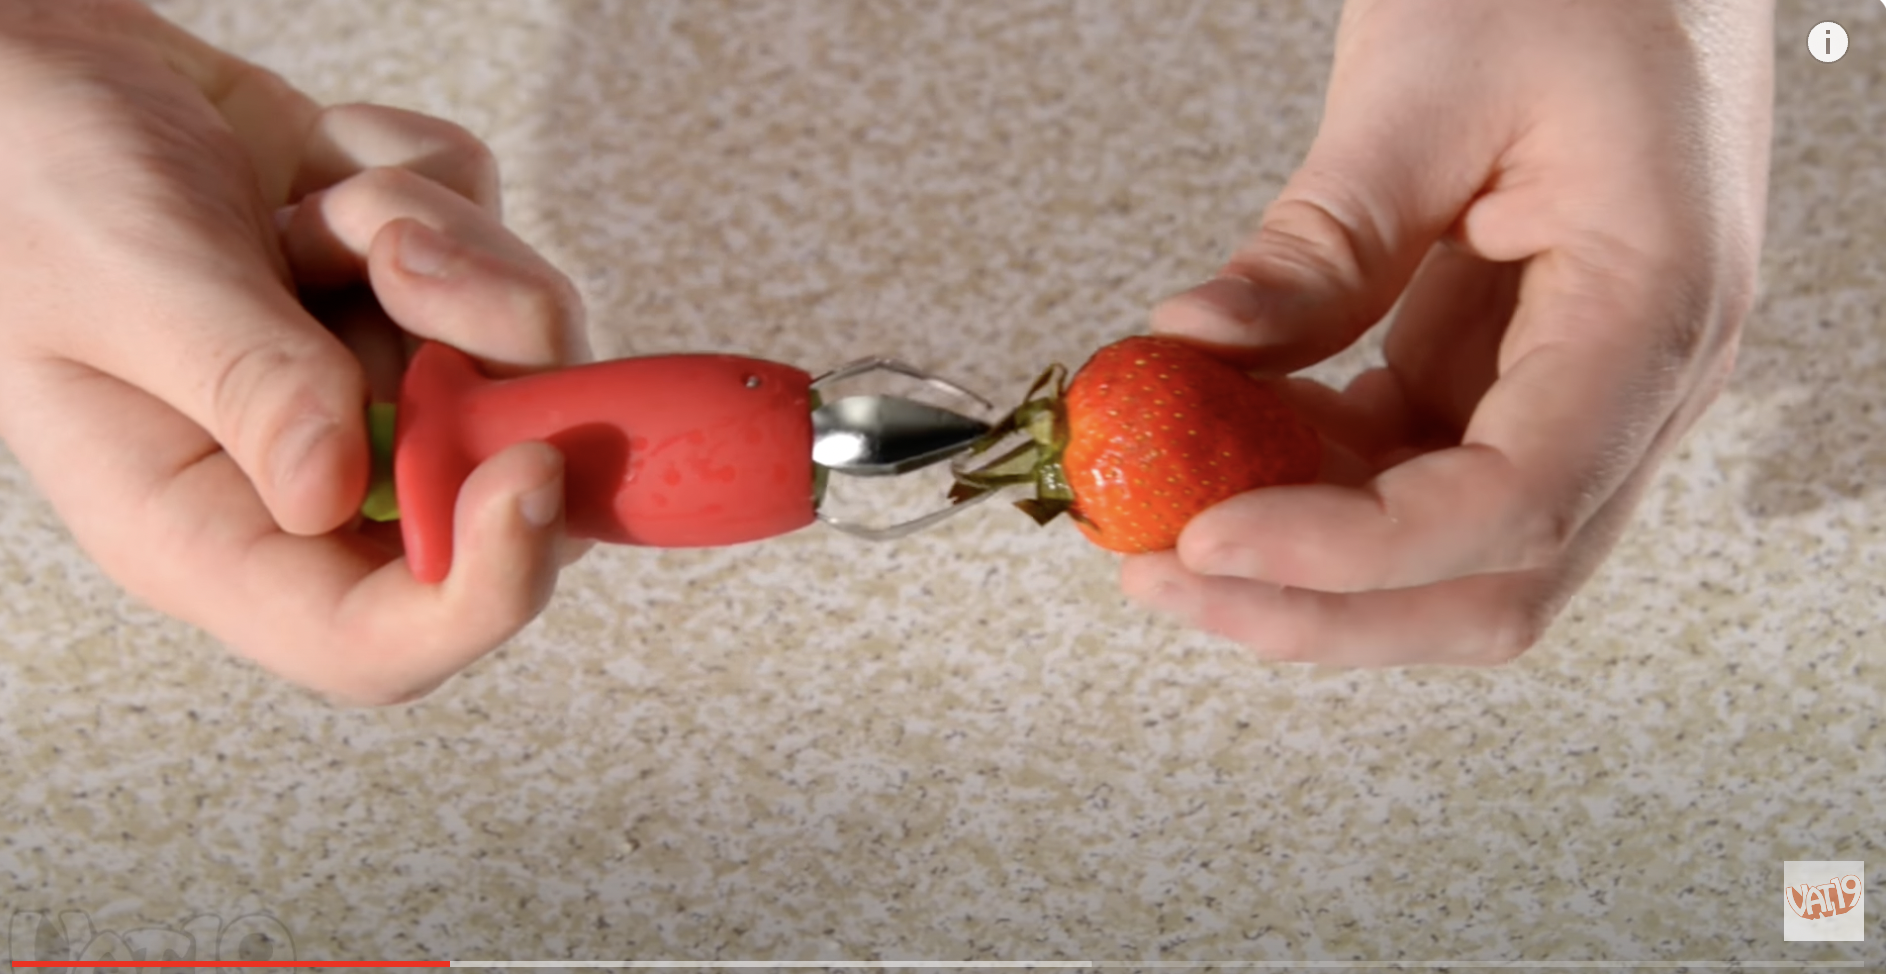 Un descorazonador retirando el tallo de una fresa. | Fuente: Youtube/Vat19